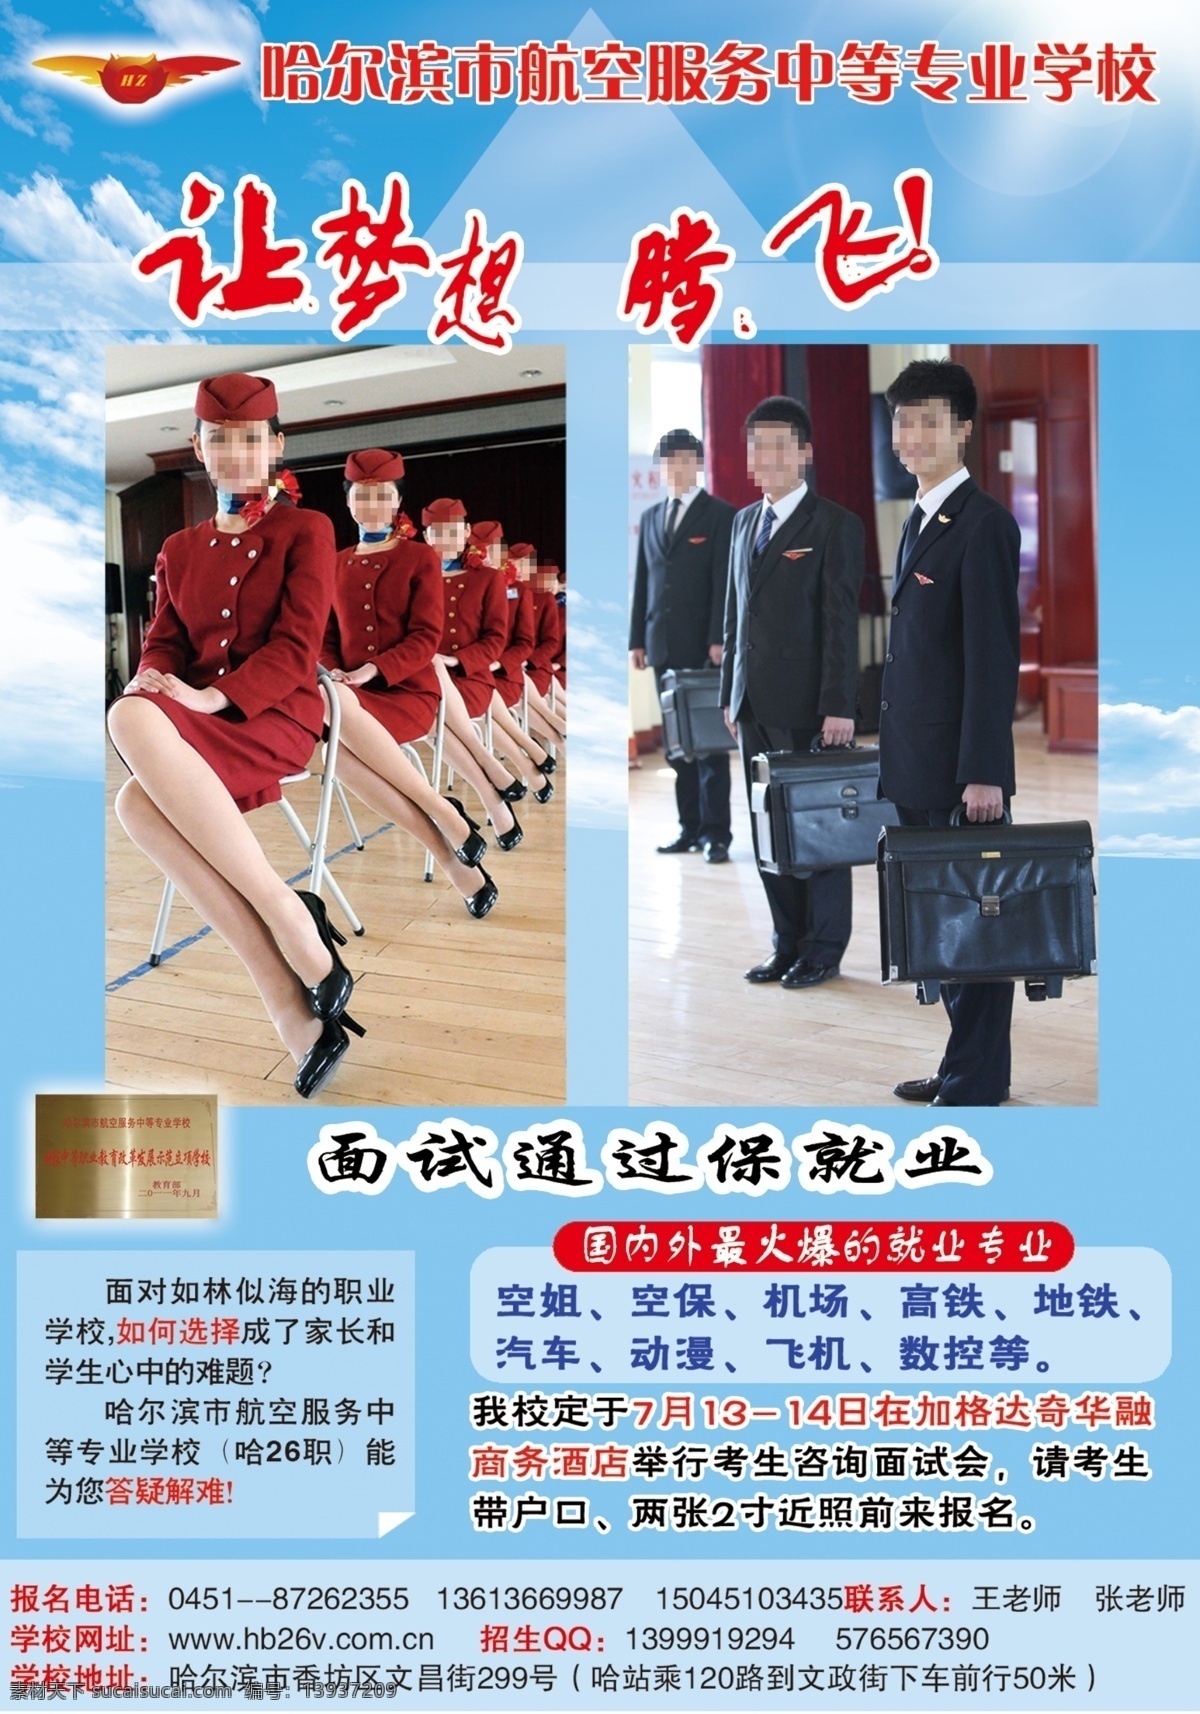 哈尔滨市 航空 学校 海报 蓝天 白云 标志 文字 空姐 男空乘图片 宣传单 广告设计模板 源文件